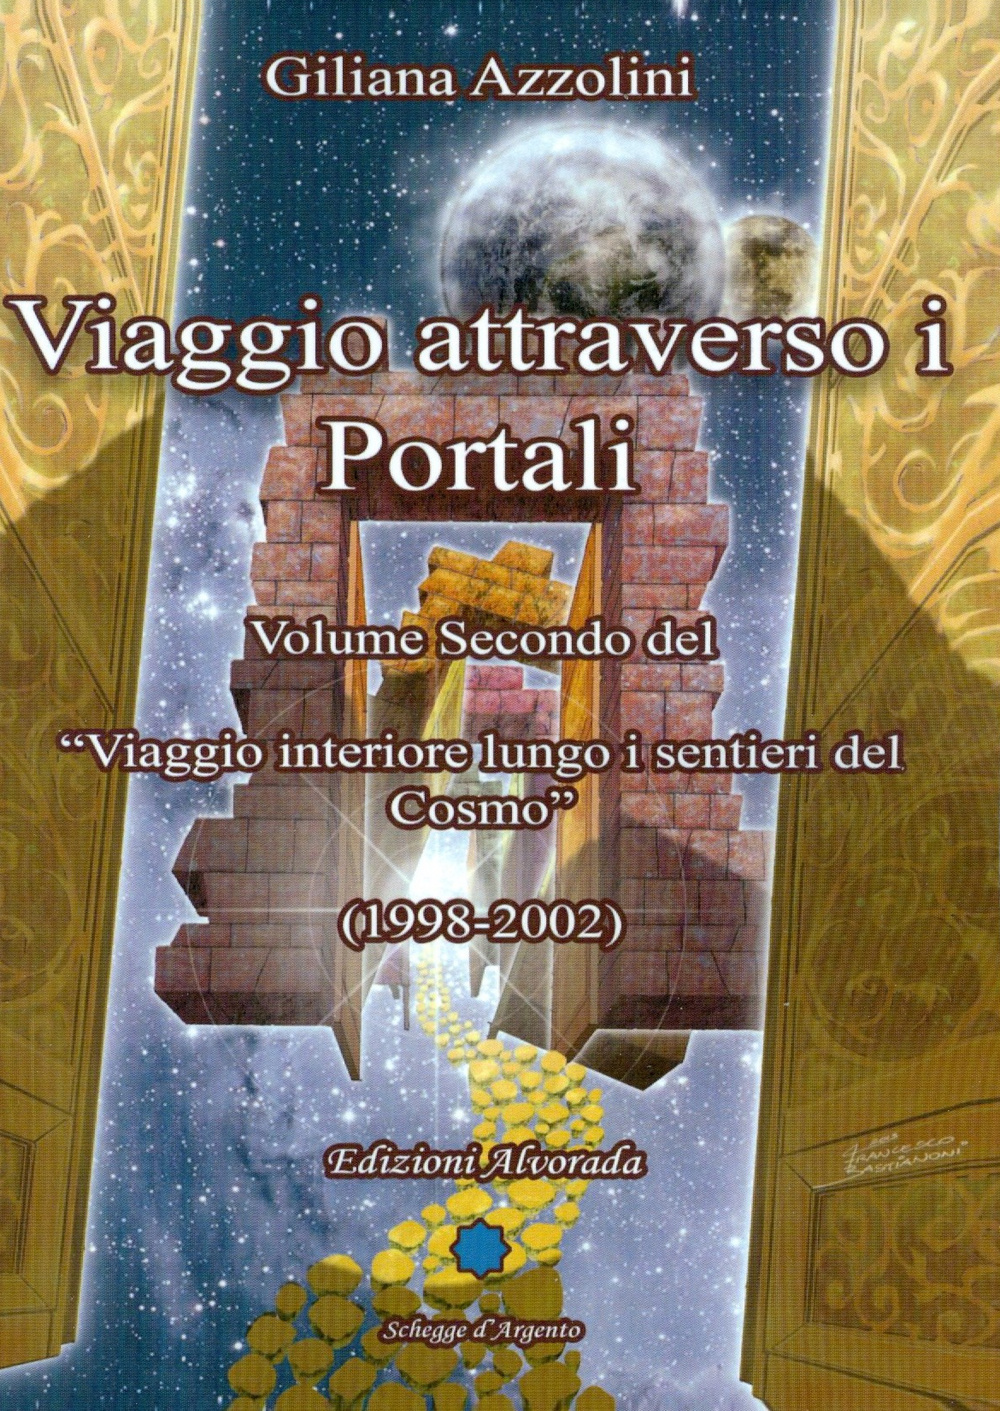 Viaggio attraverso i portali (1998-2002)